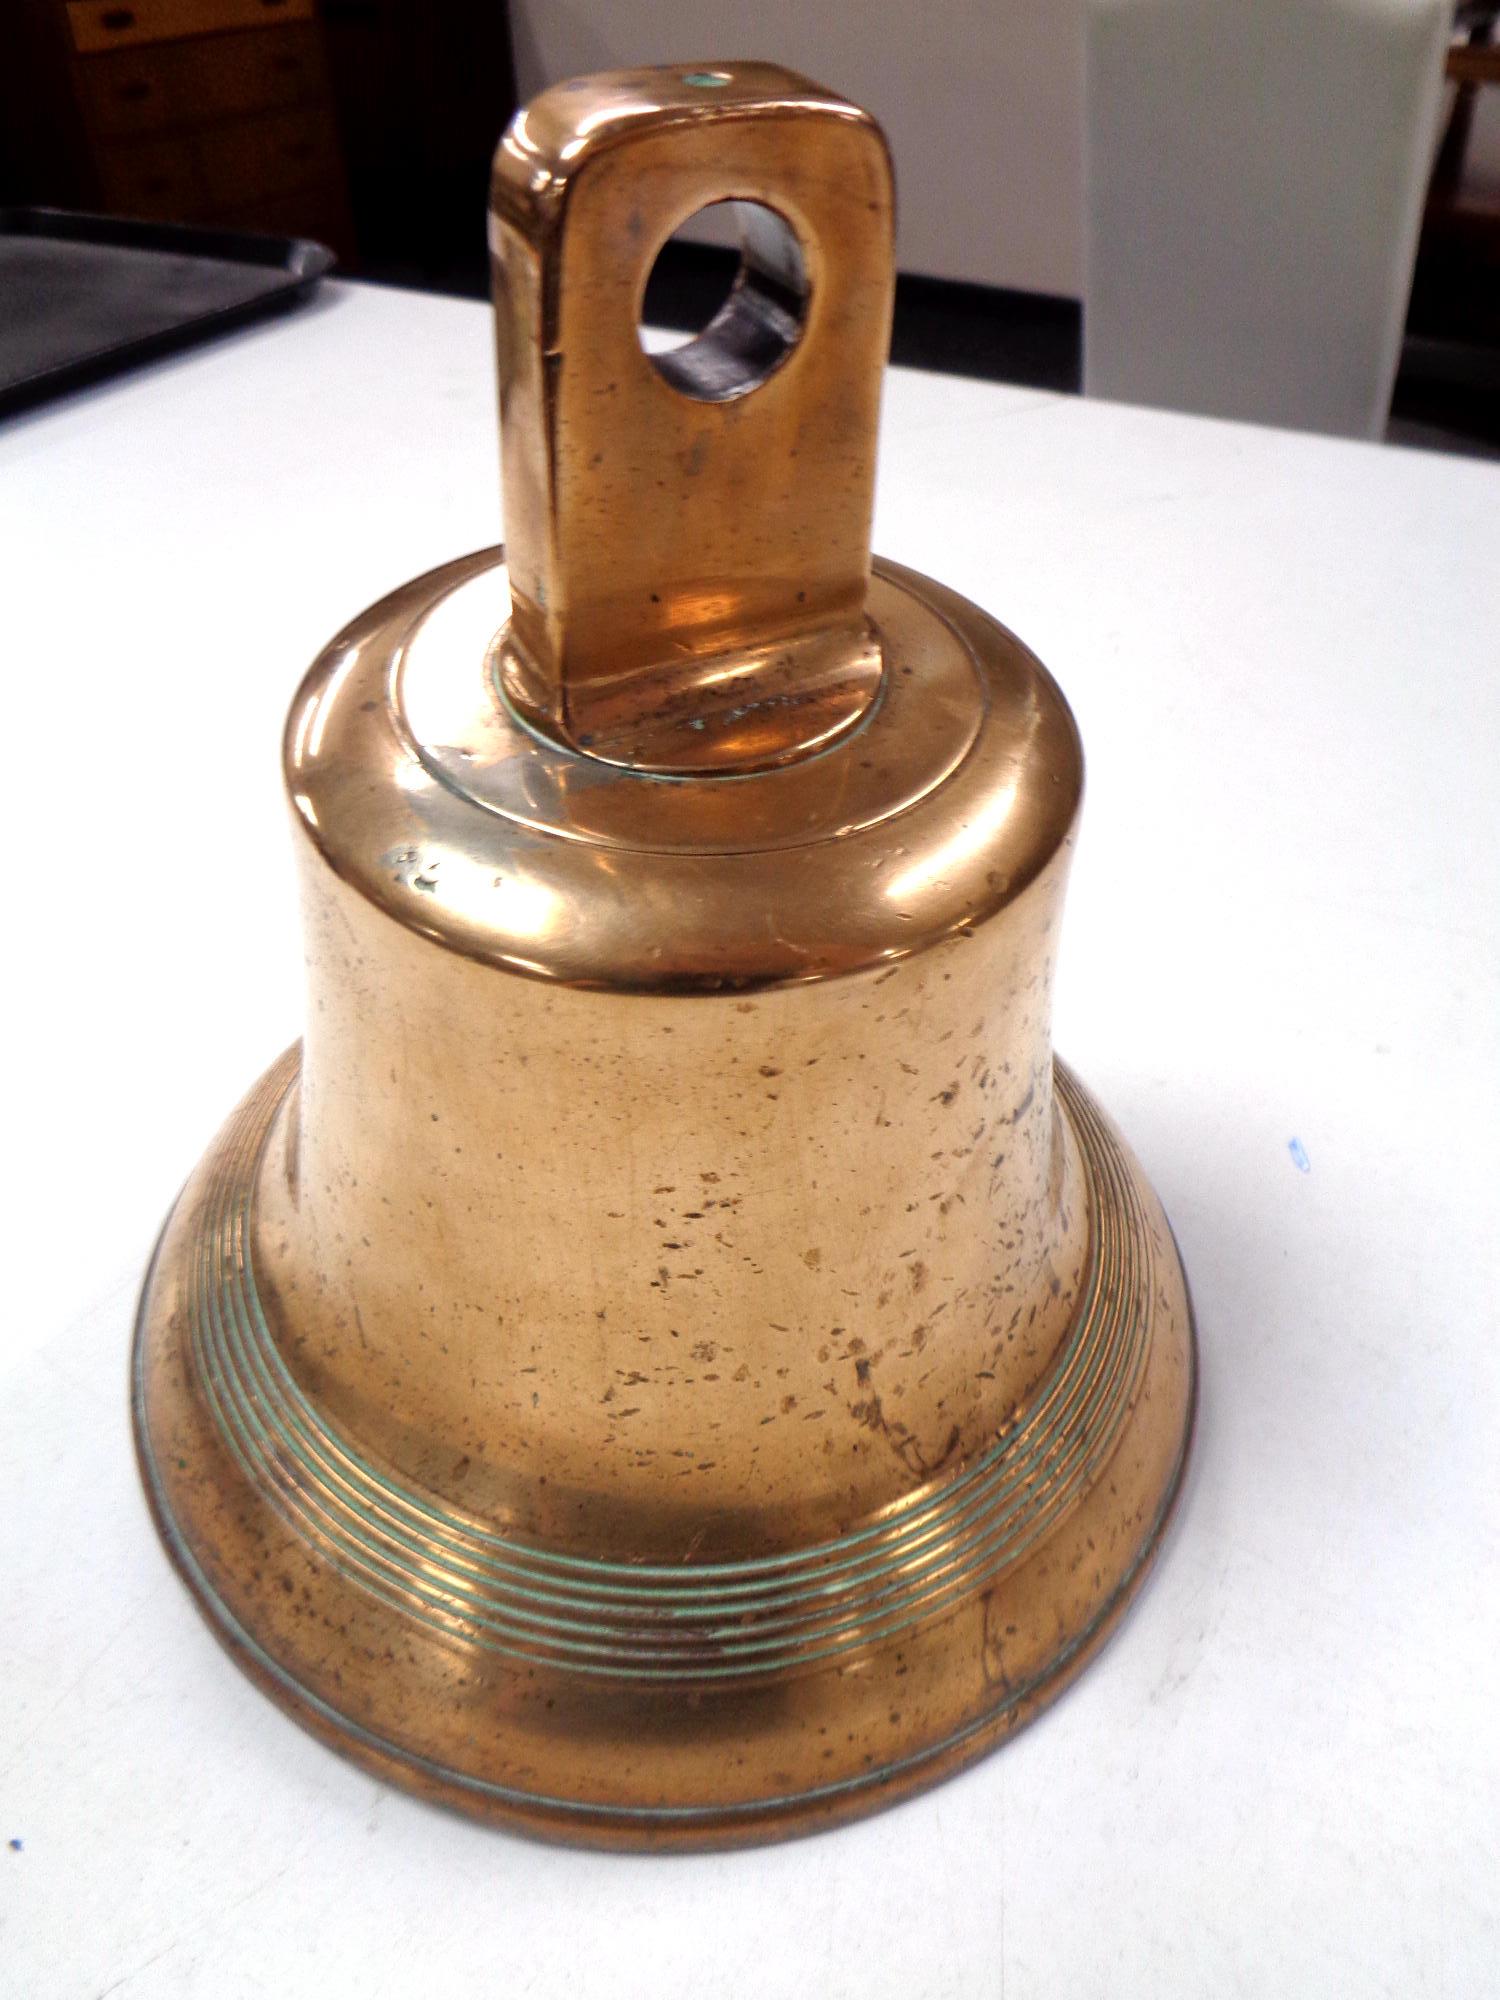 An antique brass bell.